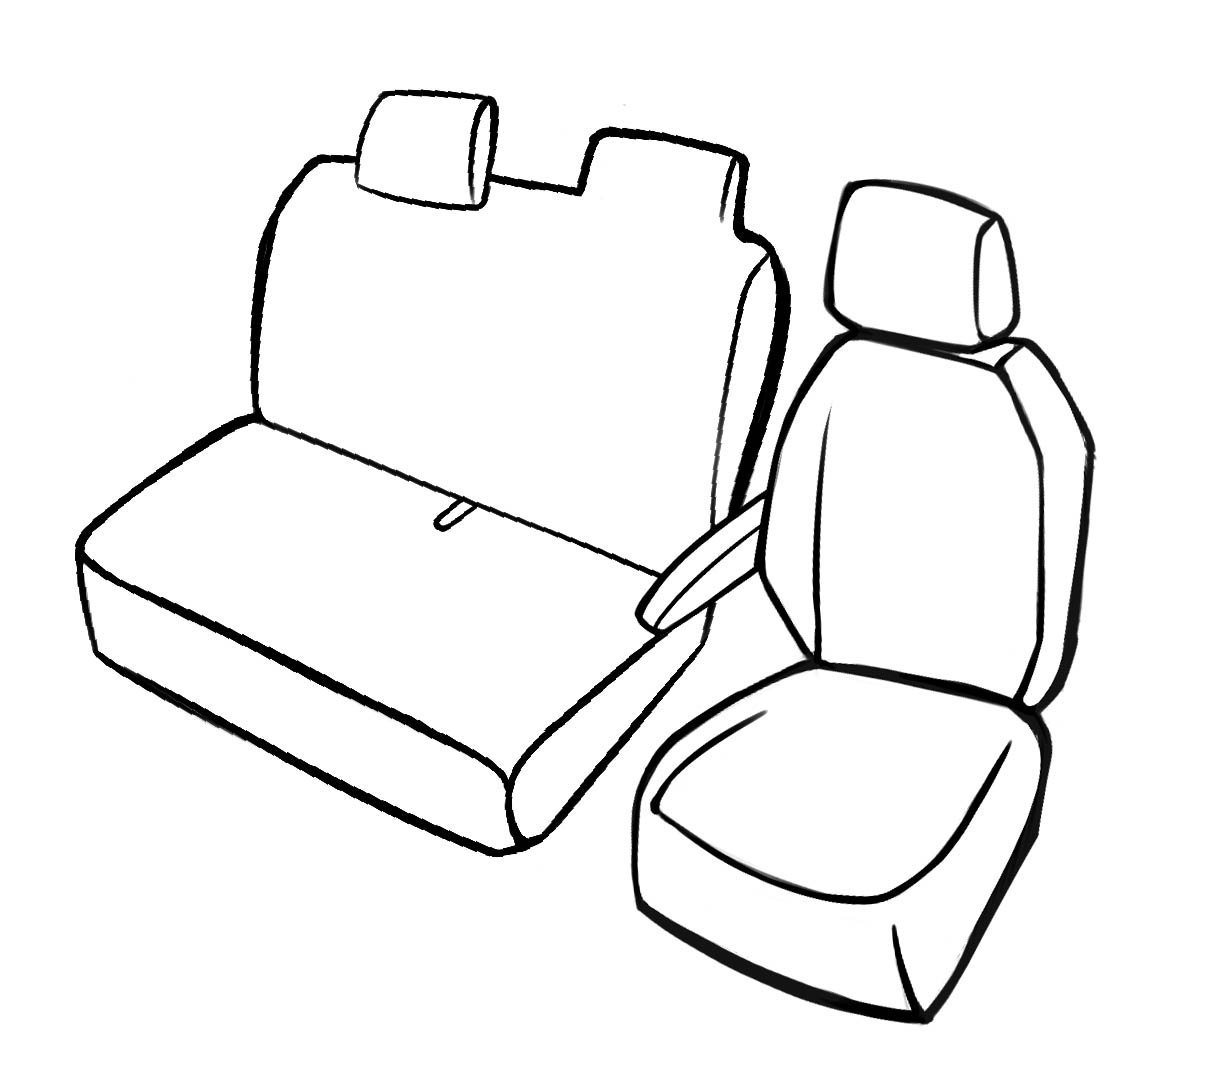 Premium Housse de siège pour VW Crafter 04/2006-12/2016, 1 housse de siège simple avant + housse d'accoudoir, 1 couverture de banc double